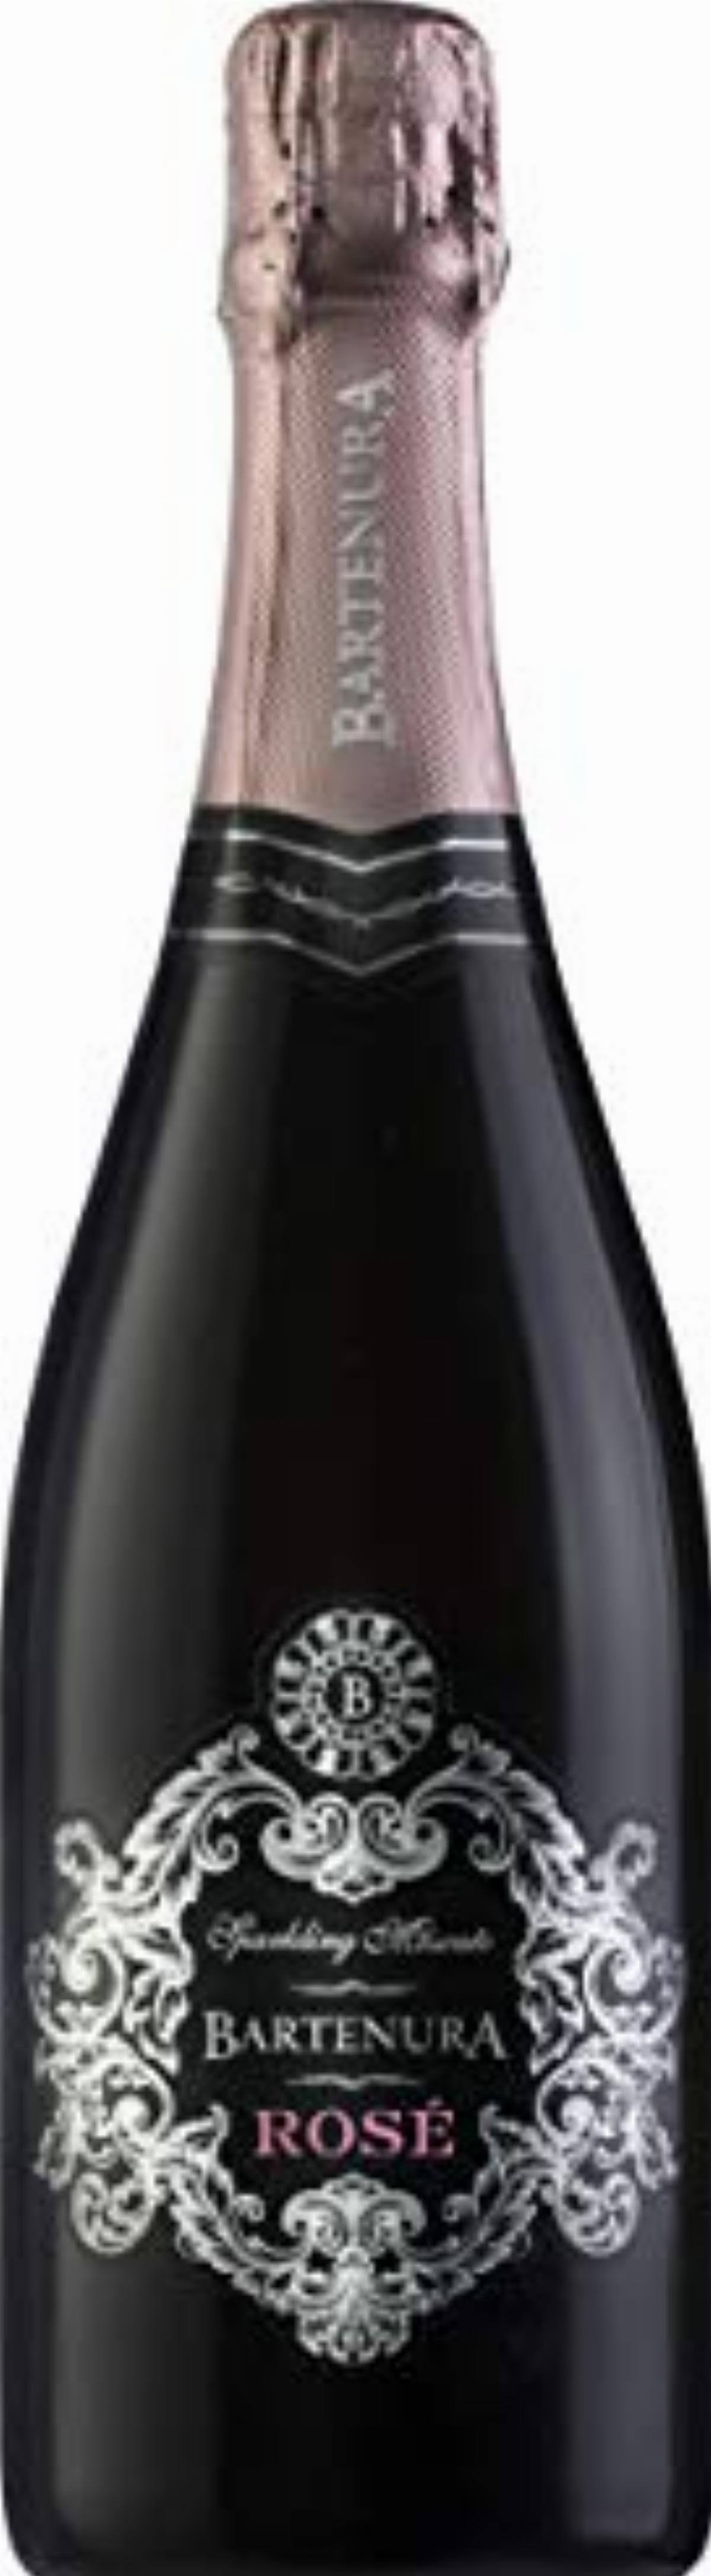 Bartenura Moscato Rose, Asti (Vintage Varies) - 750 ml bottle